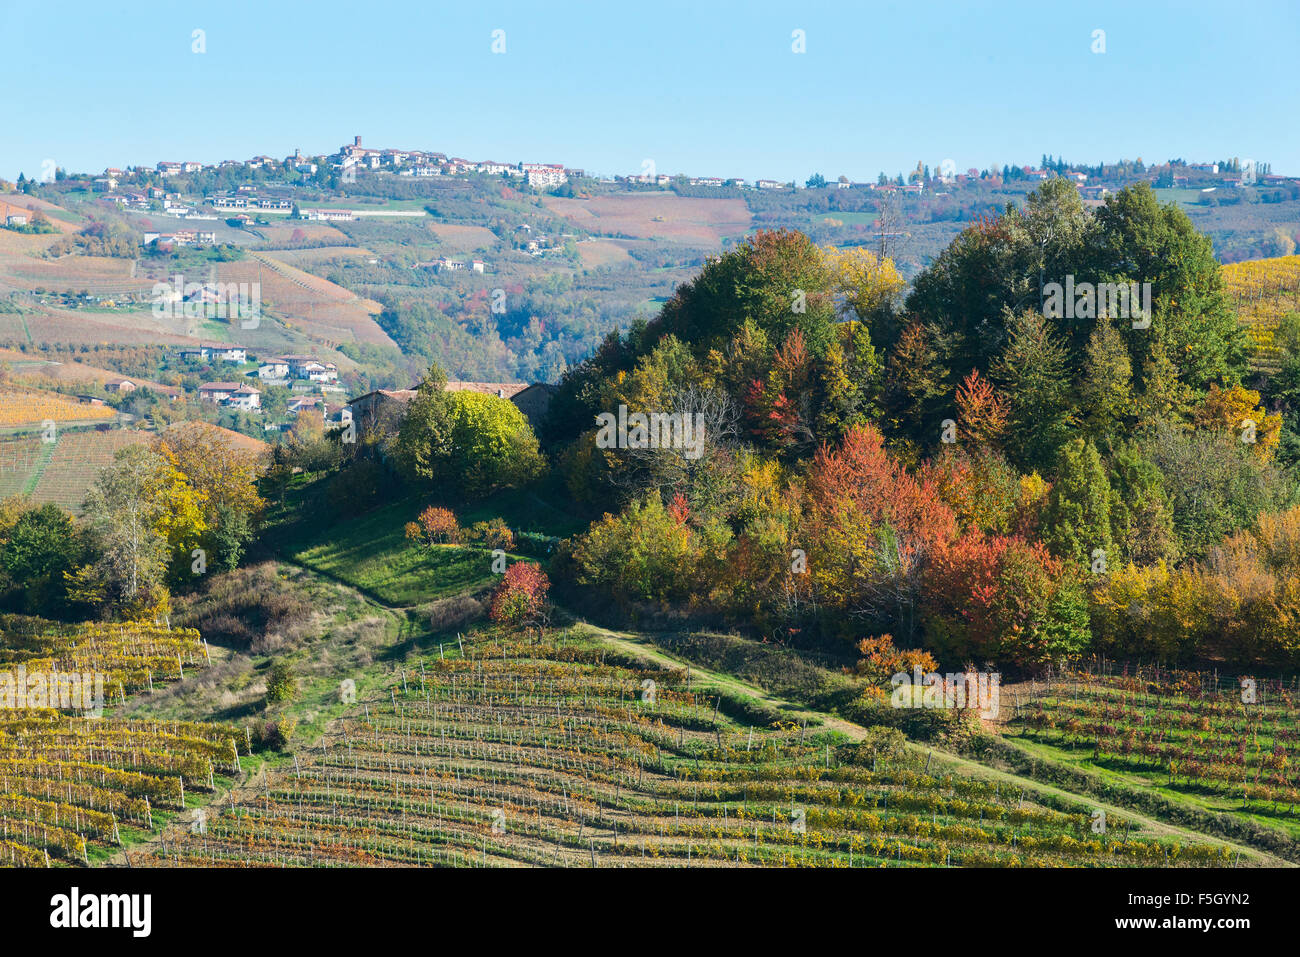 Il Piemonte, Italia, panorama di vigneti del Piemonte: Langhe-Roero e Monferrato nella lista del Patrimonio Mondiale dell'UNESCO. Foto Stock